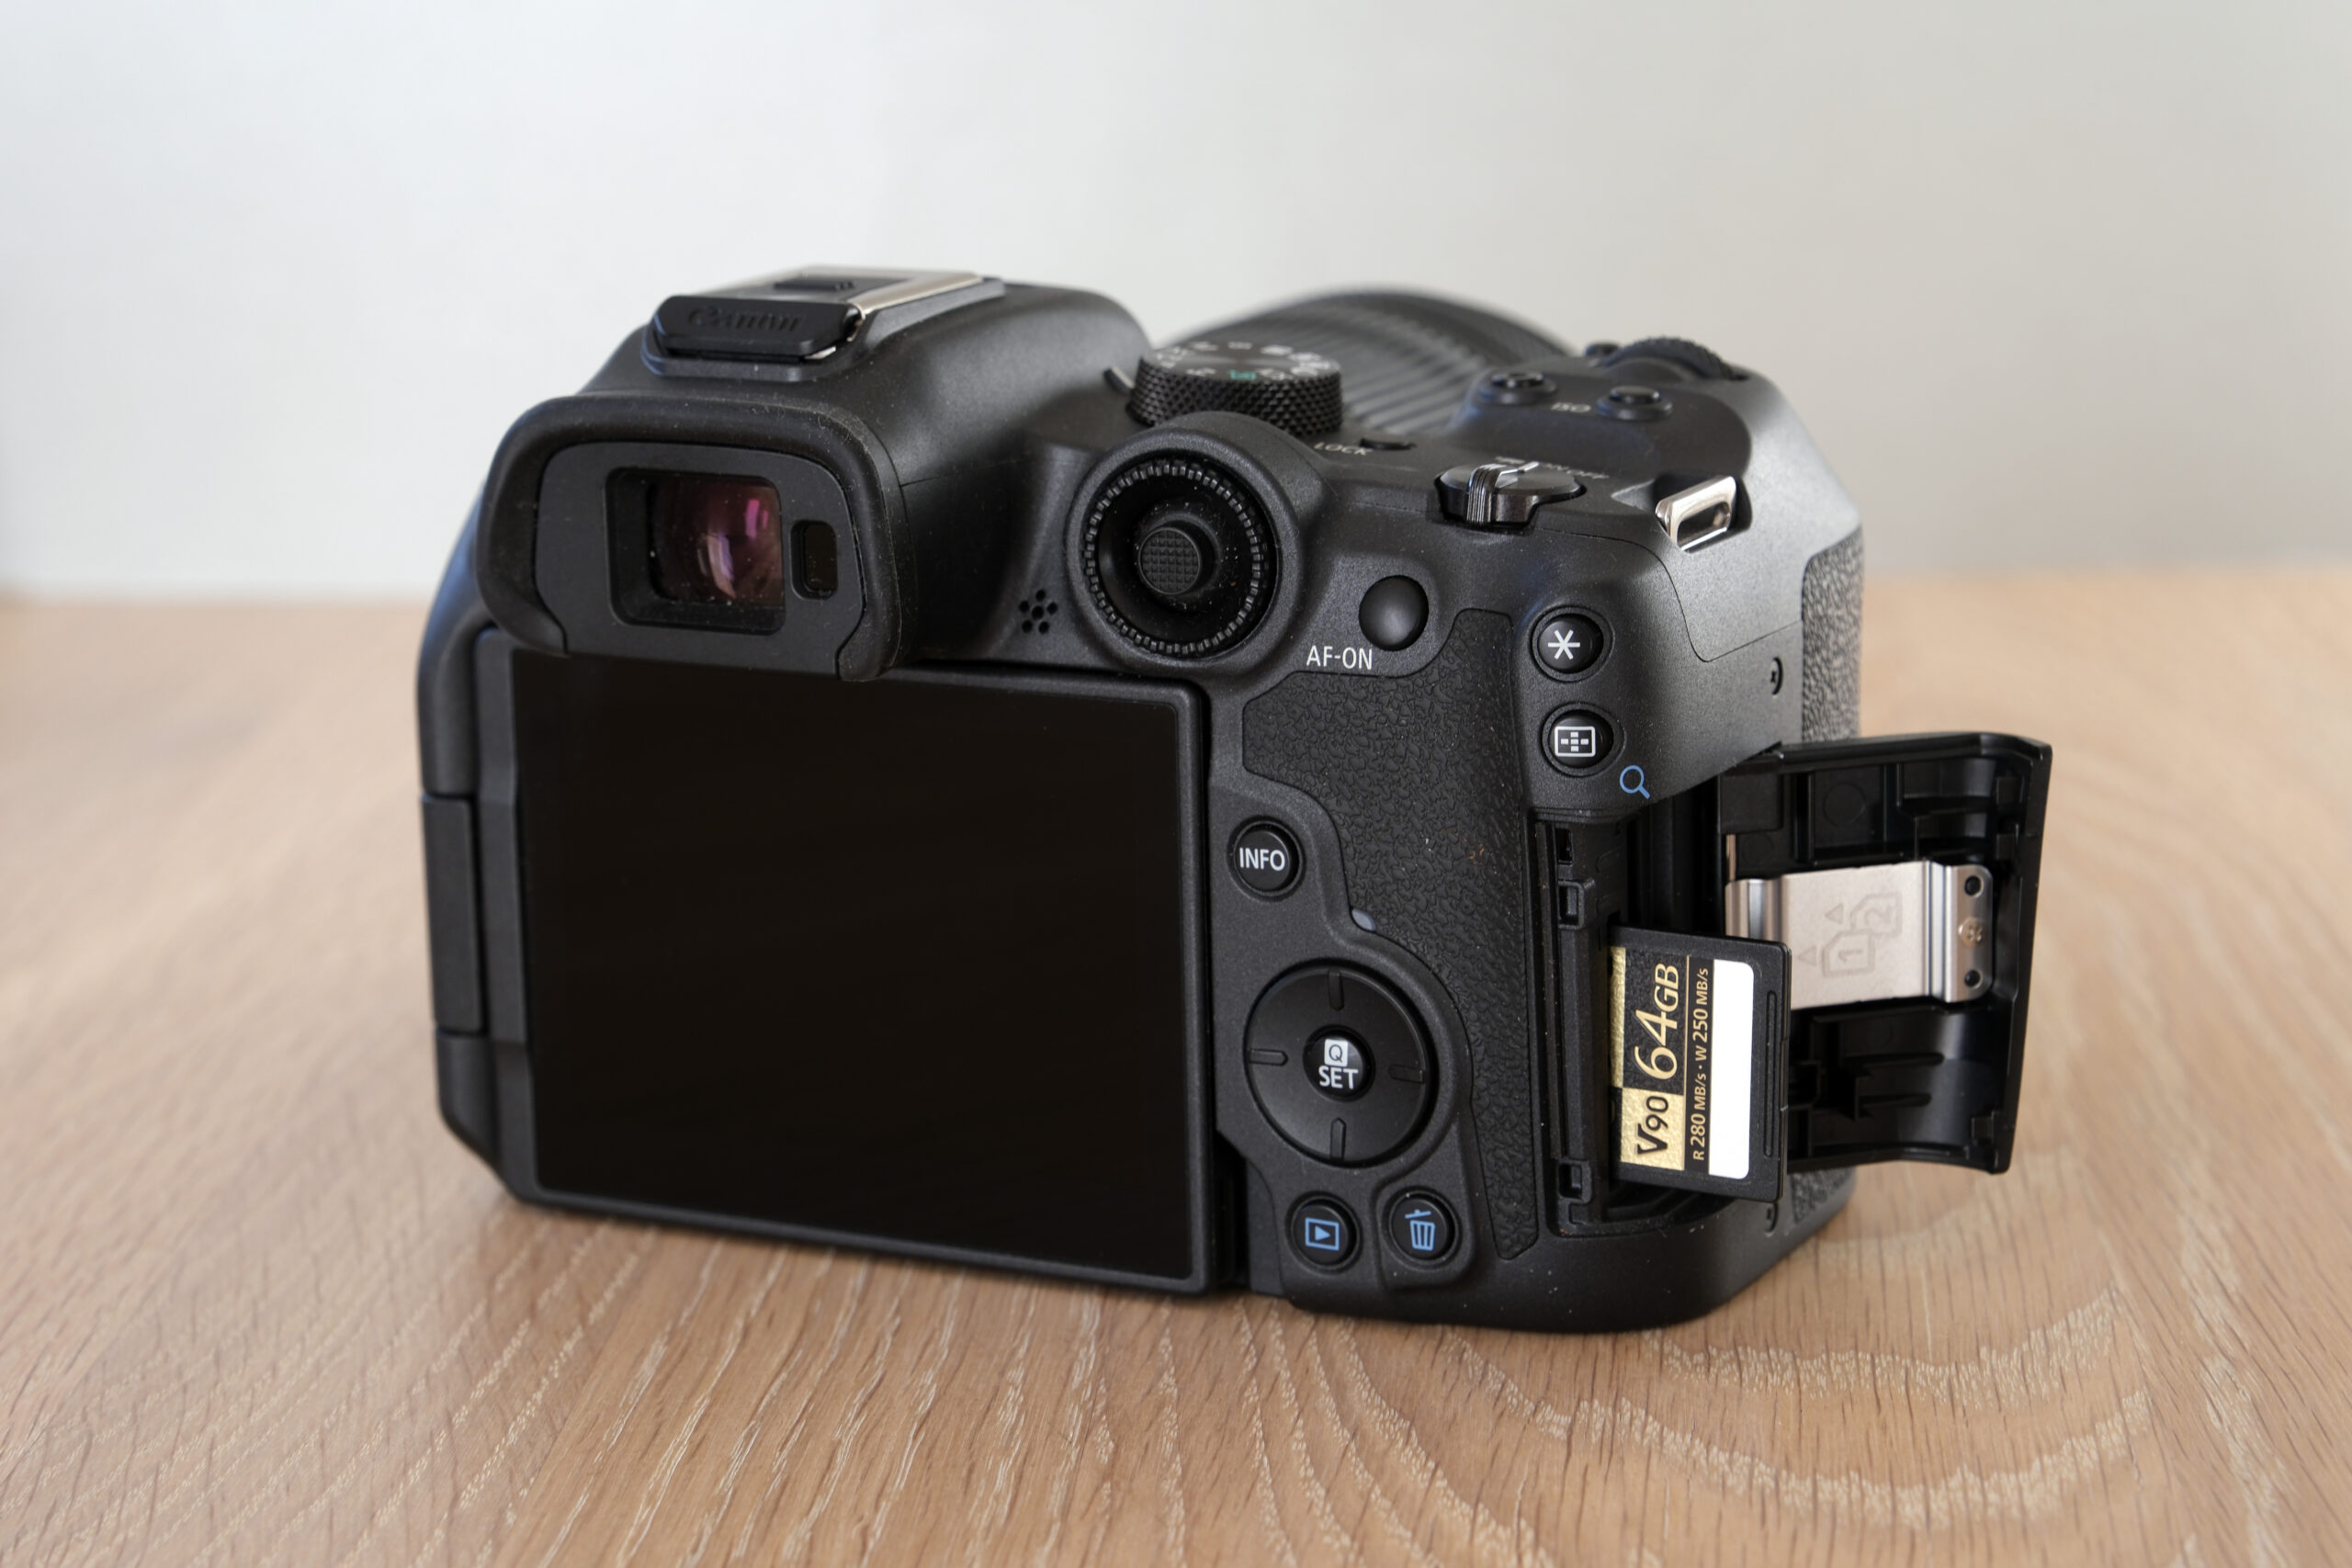 TEST: Canon EOS R7 – Kvikt Canon-kamera